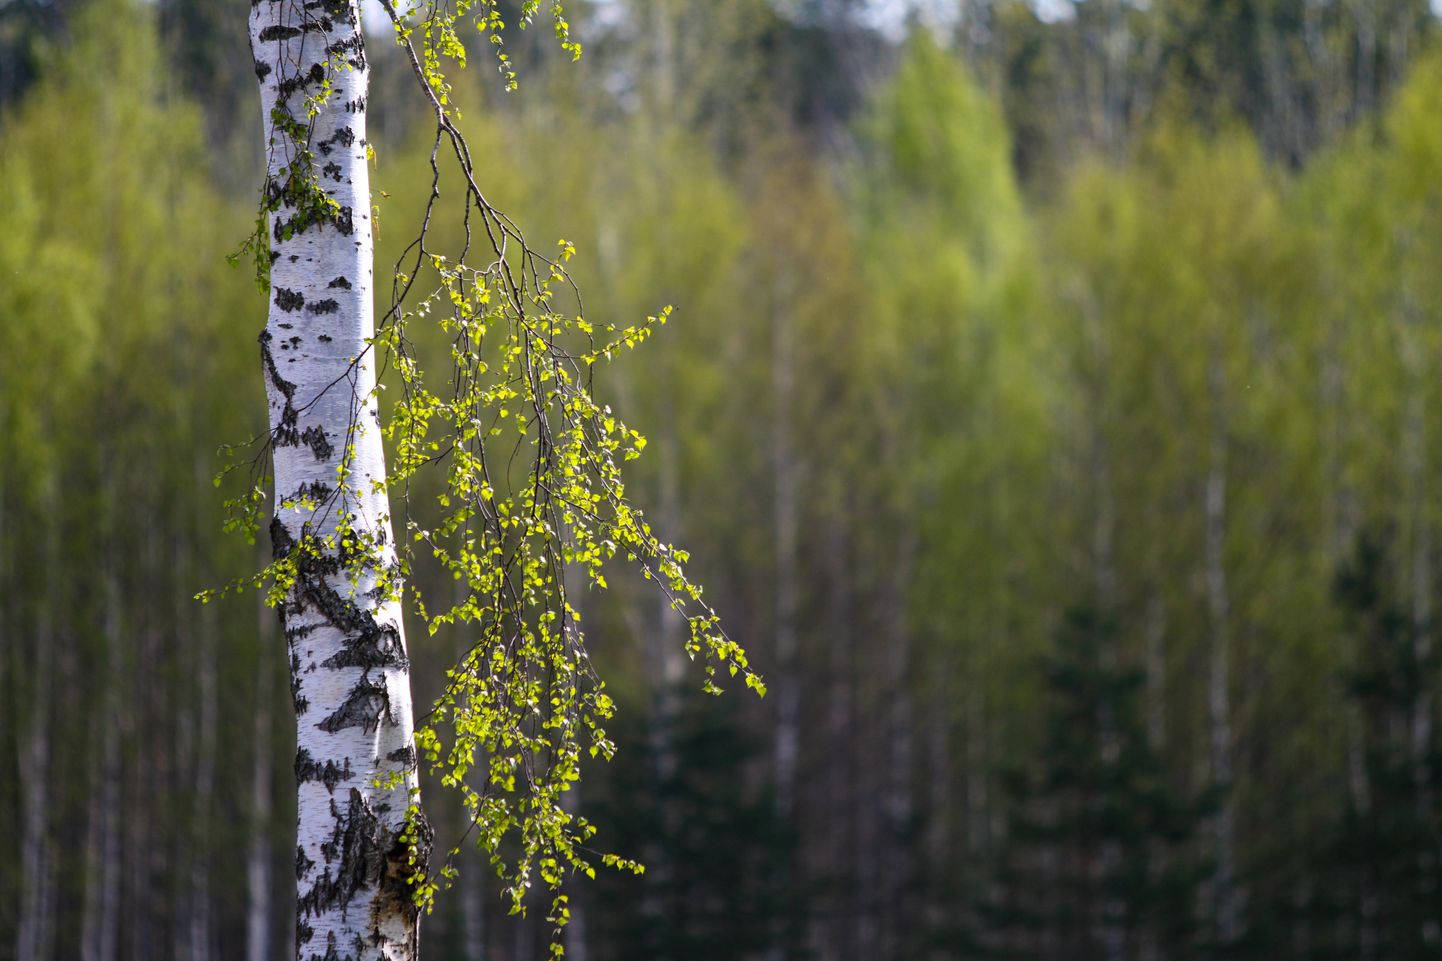 Kahe nädala jooksul külastatakse mitmeid tipptasemel metsandusettevõtteid, looduskauneid kohti ja kultuurisümboleid, mis annab võimaluse tutvustada Eestit ning siinset metsandussektorit.